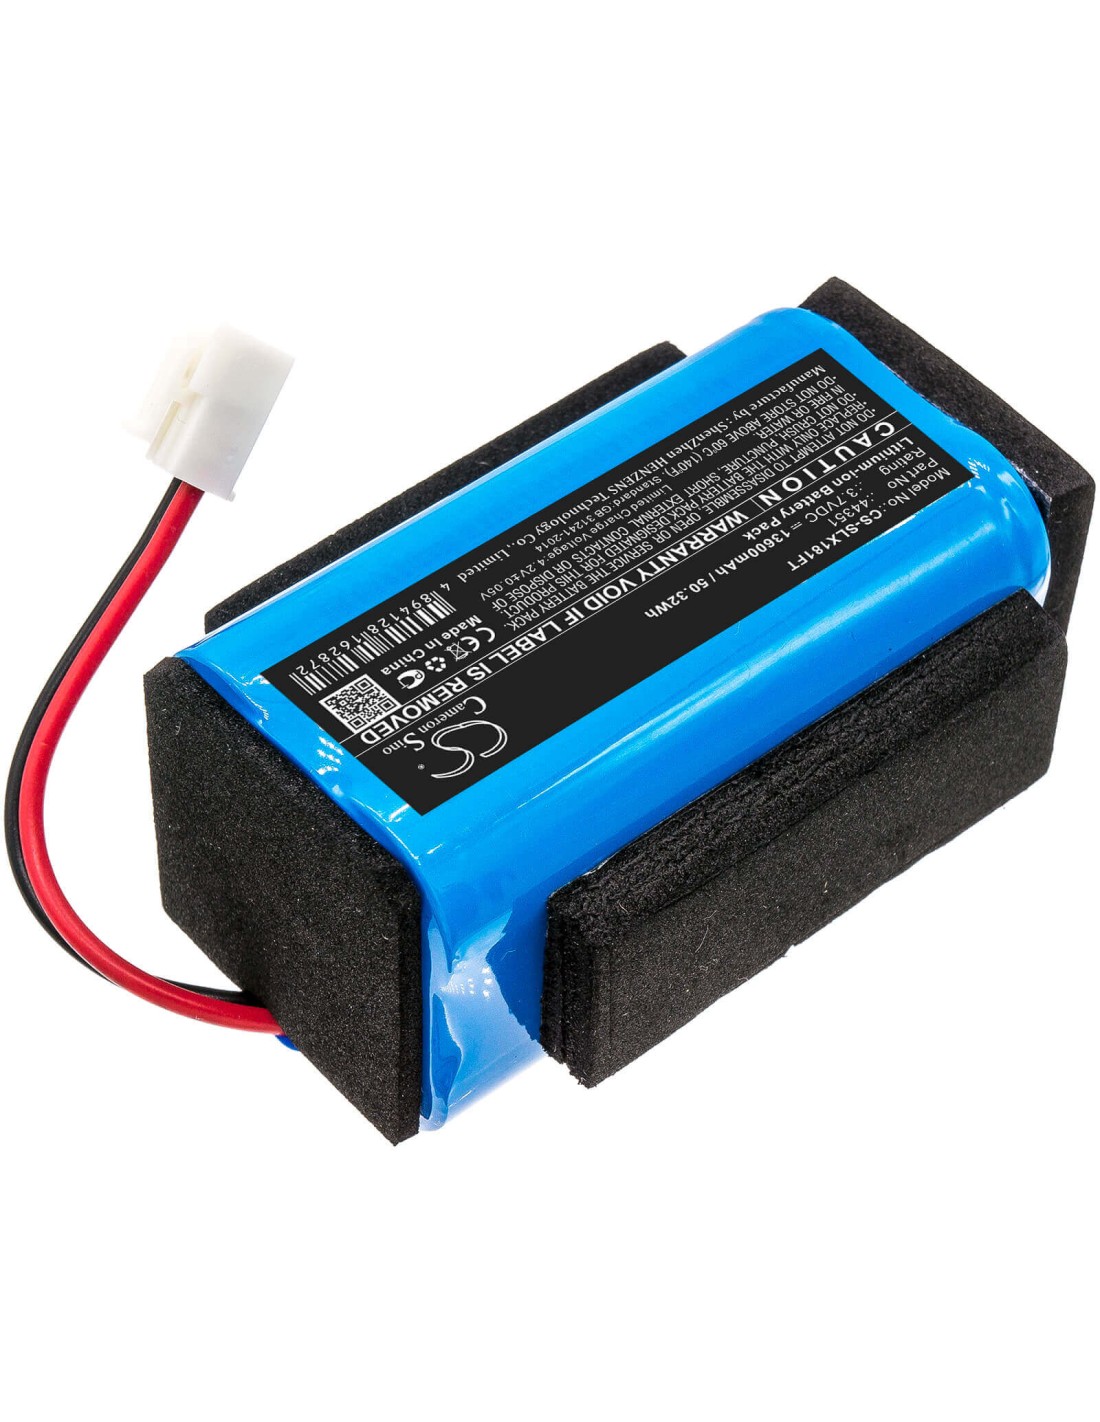 Battery for Streamlight, Vulcan, 180 3.7V, 13600mAh - 50.32Wh